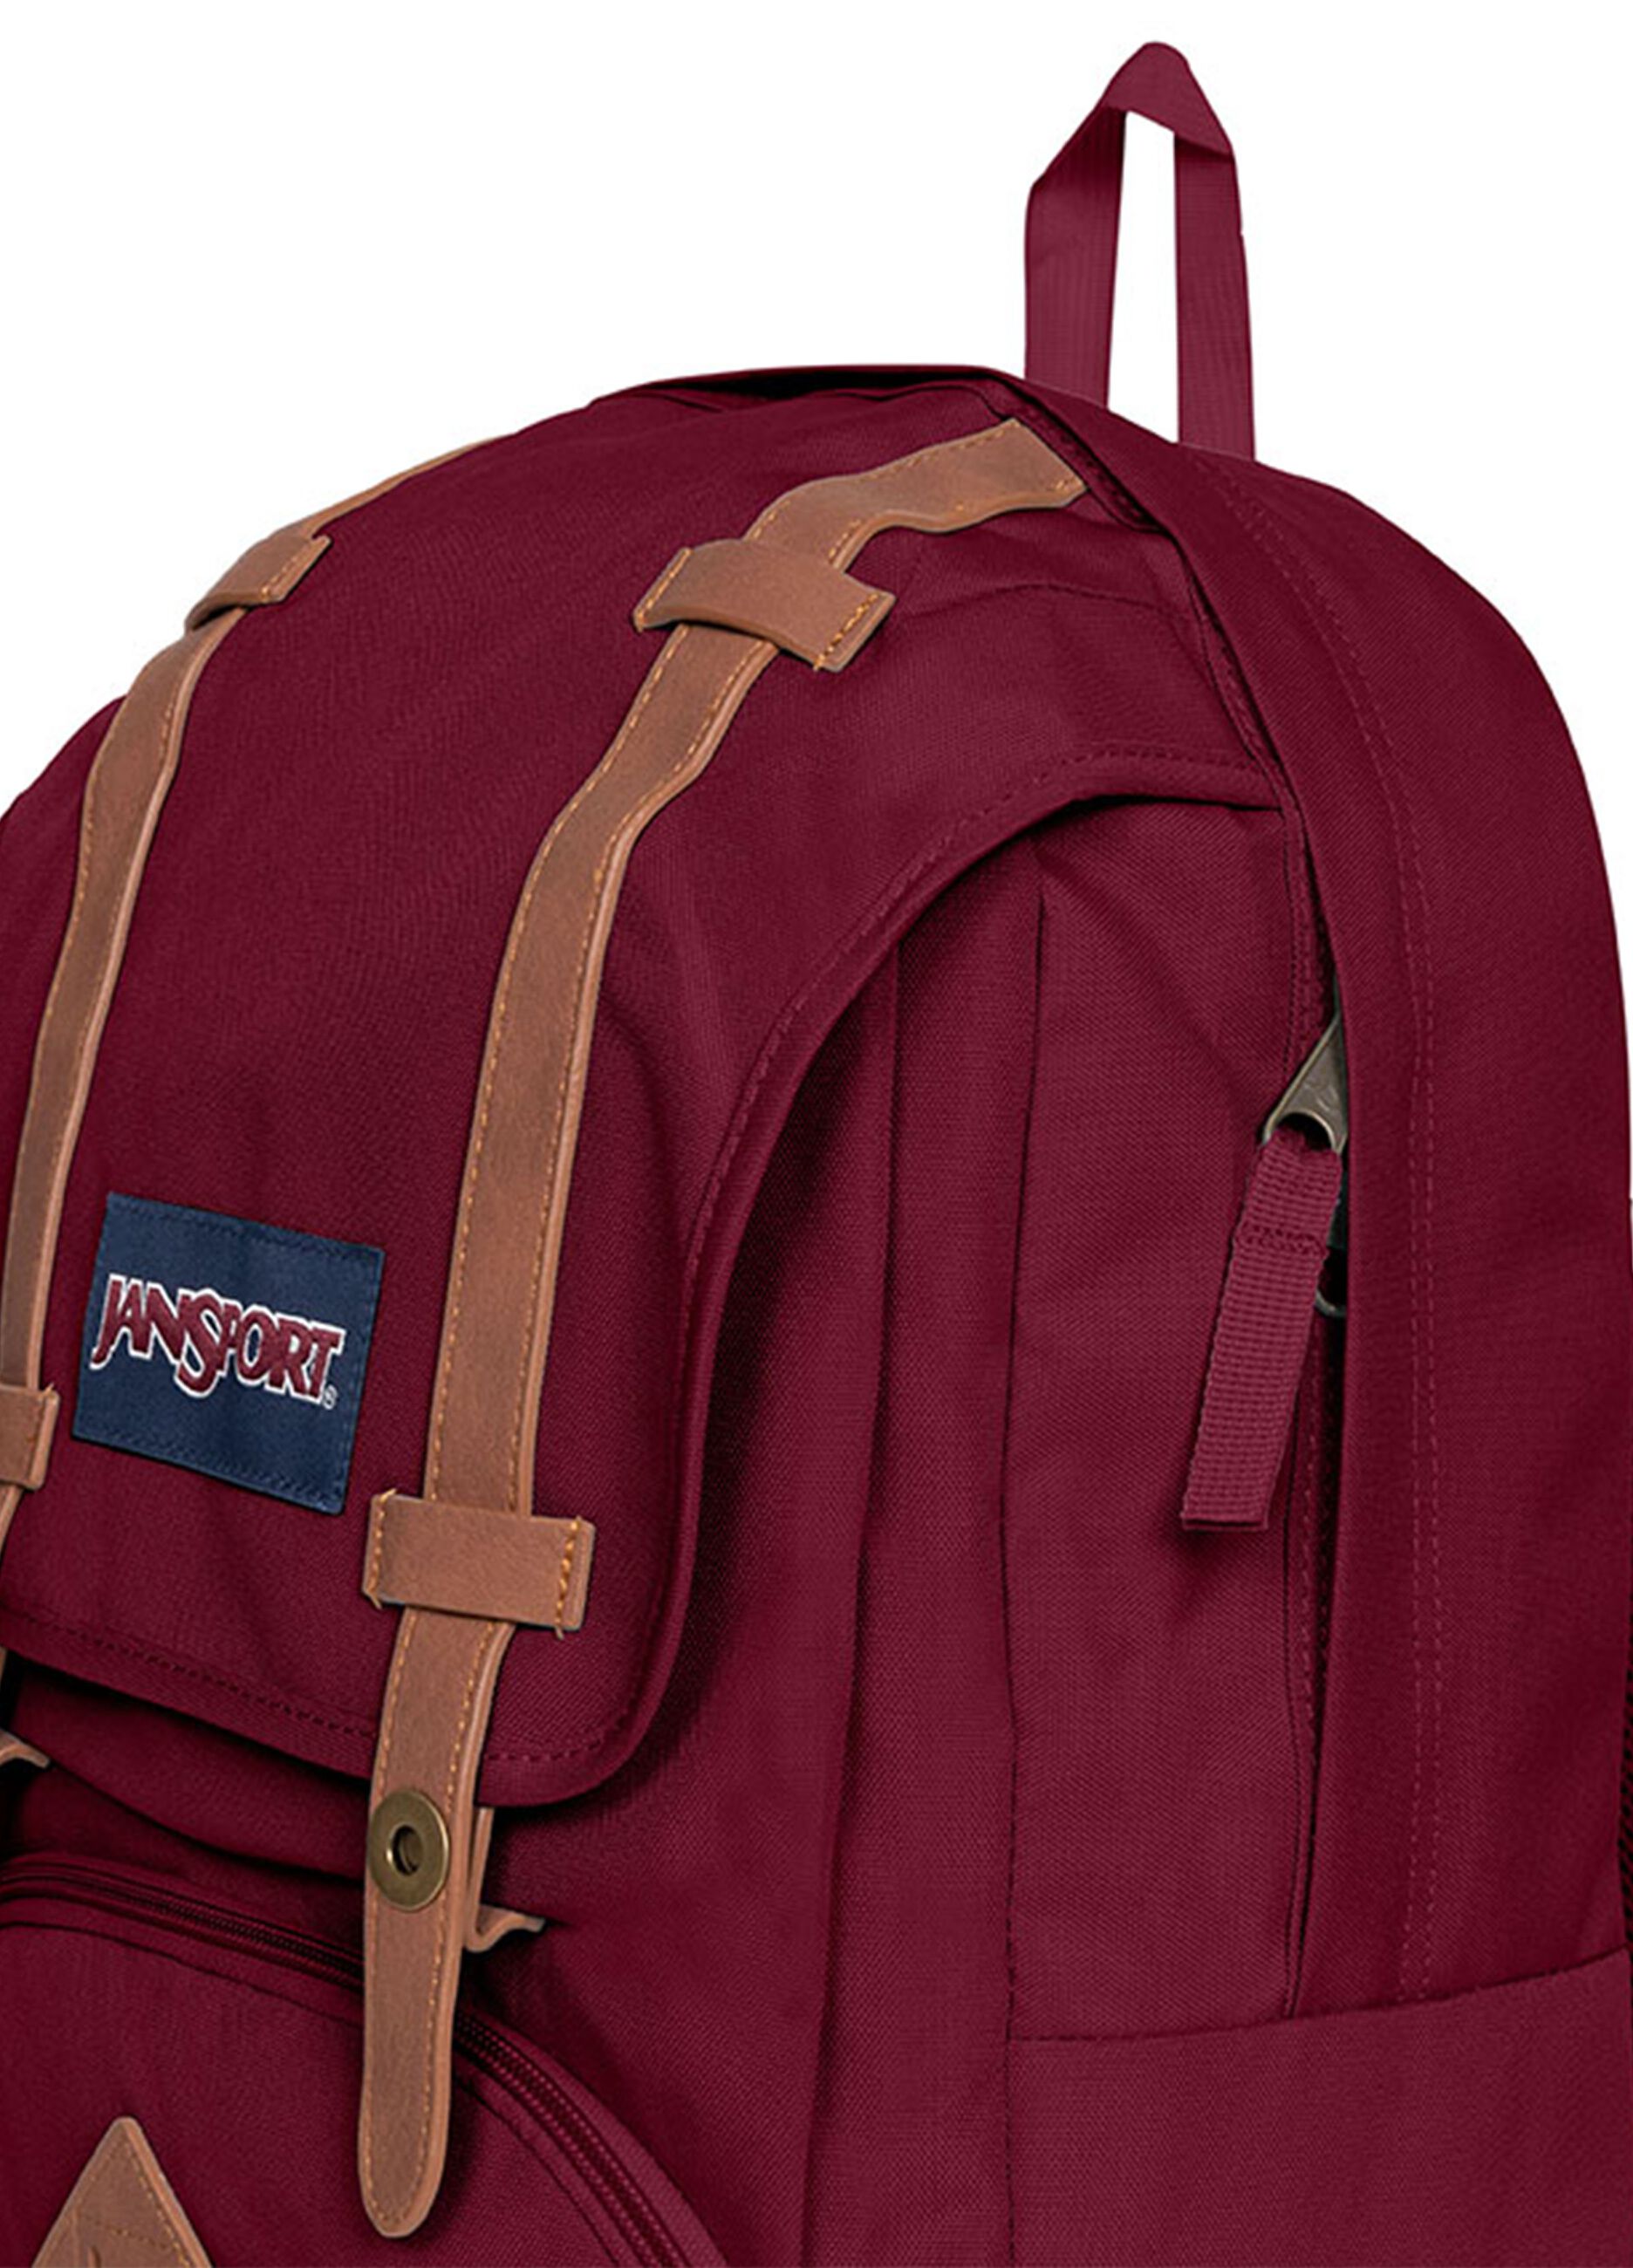 Jansport Cortlandt backpack